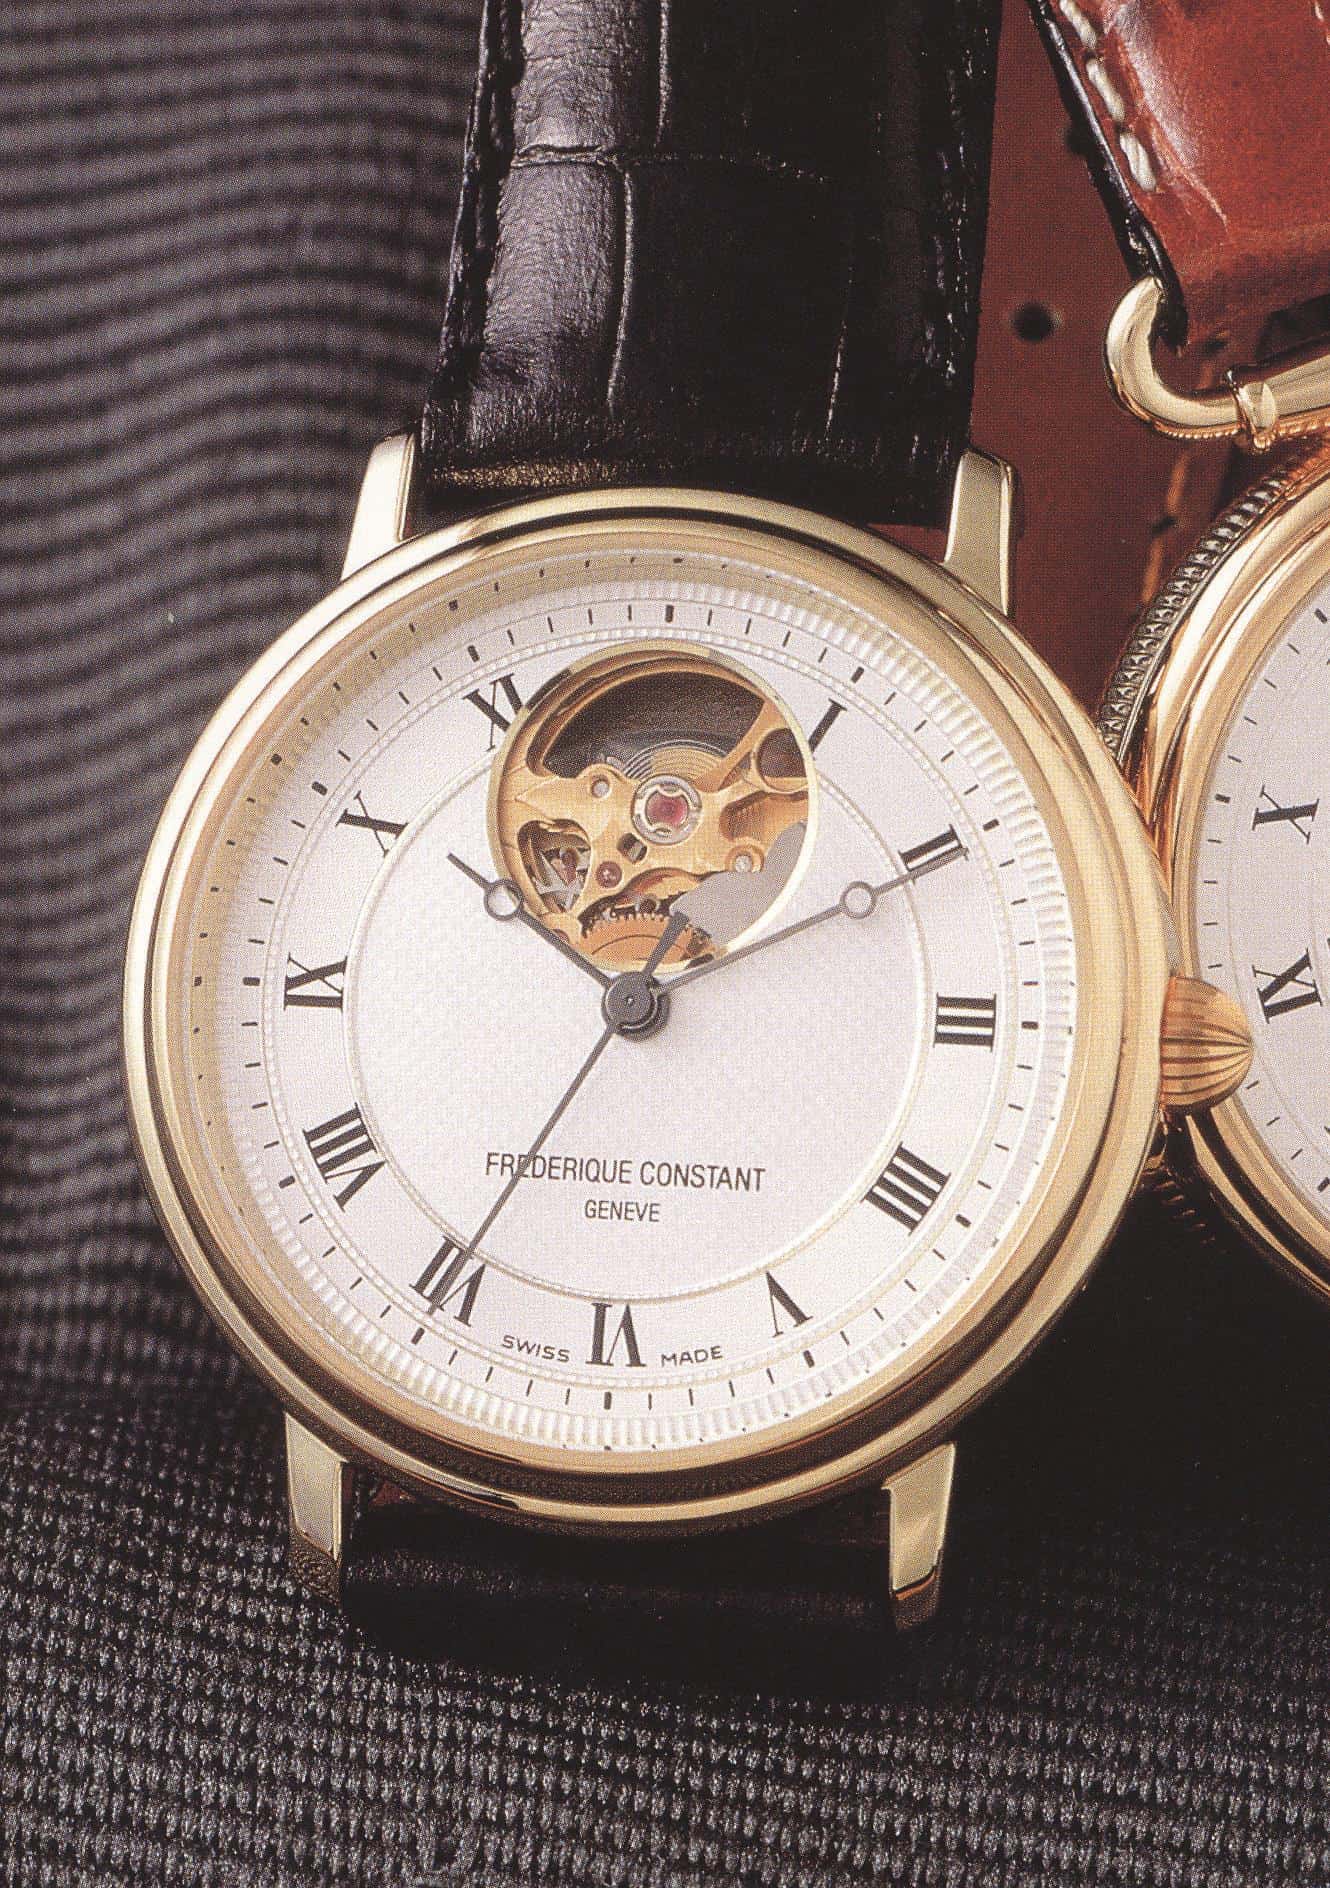 Frederique Constant mit Sichtfenster - die Idee der 1994 lancierten Heartbeat Armbanduhr wurde aber nicht geschützt